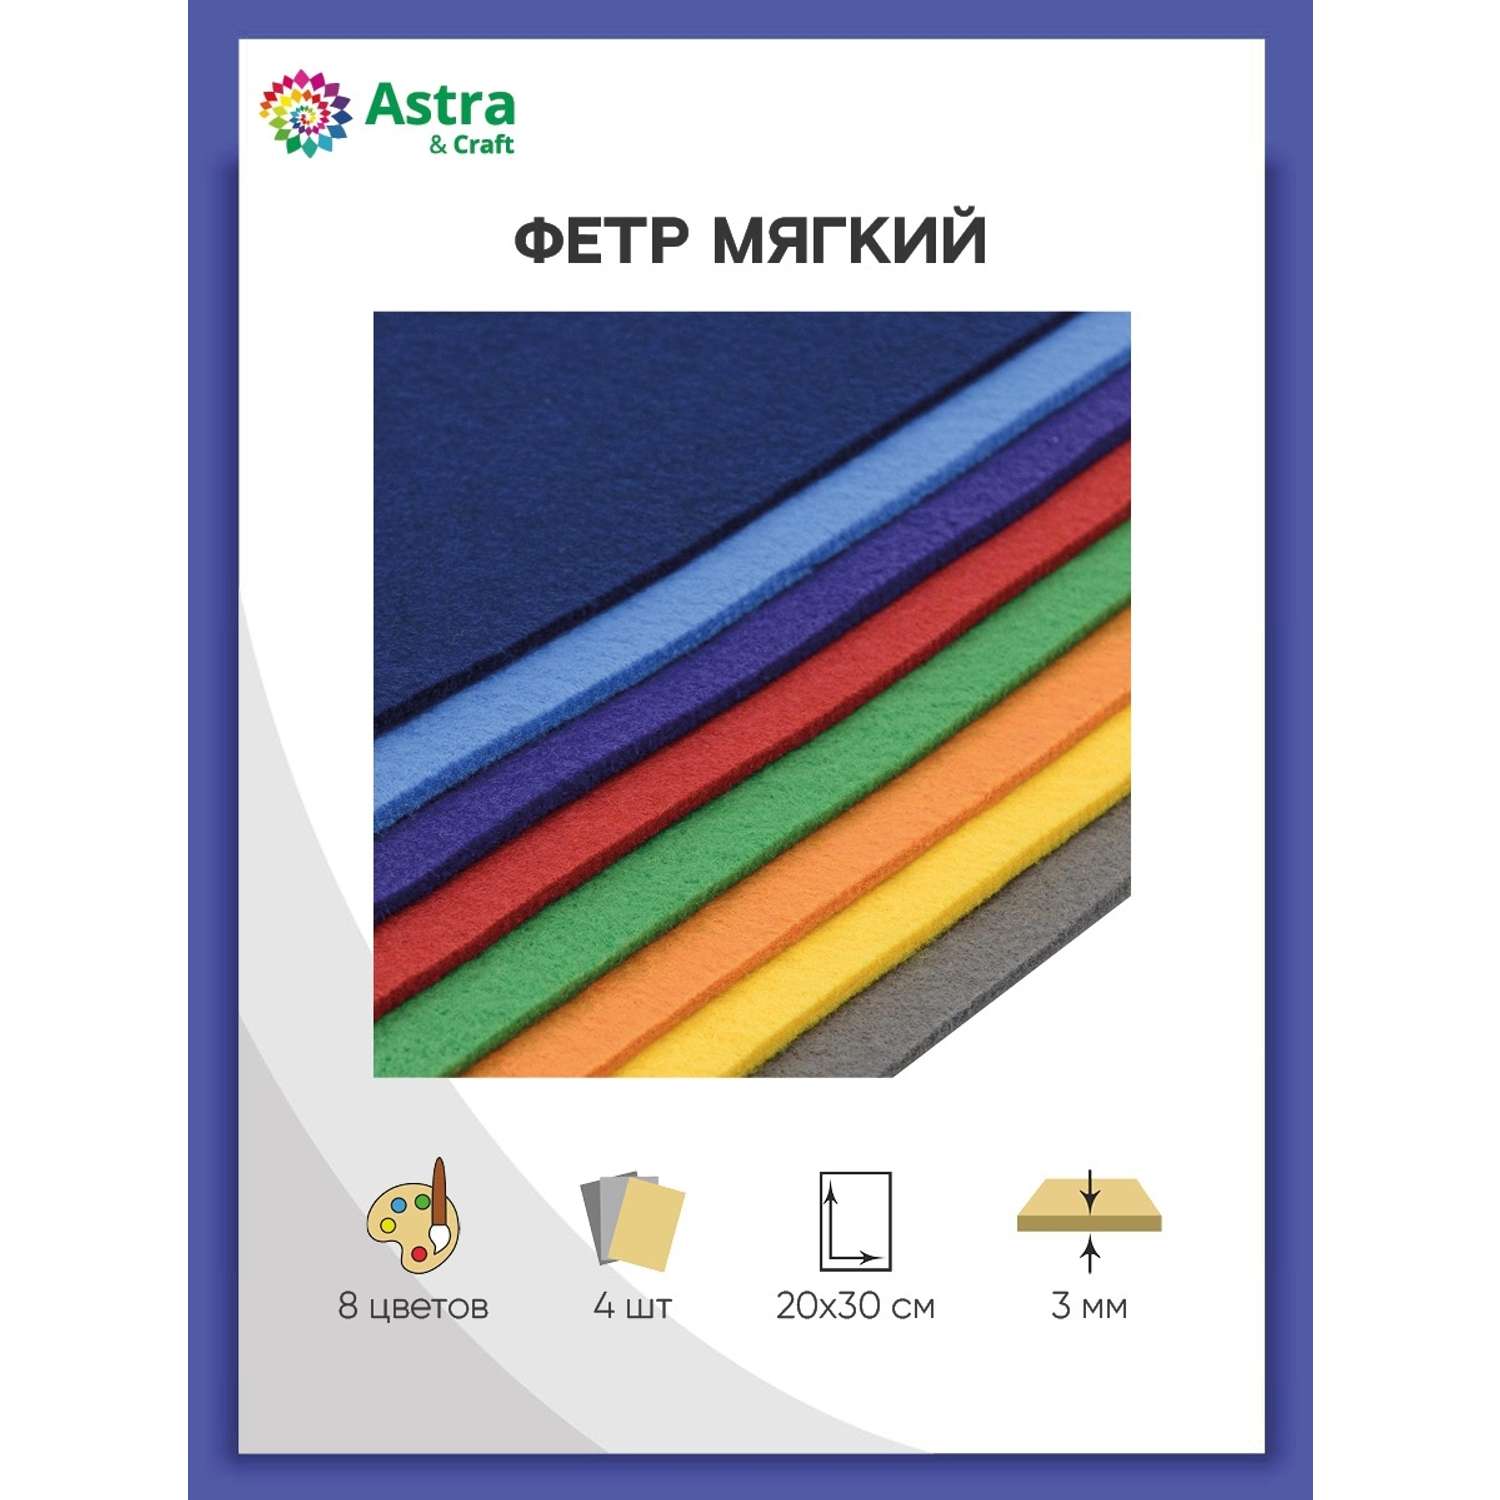 Фетр Astra Craft Листовой мягкий ассорти толщина 3 мм размер 20х30 см в упаковке 8 шт цвет номер 1 - фото 1